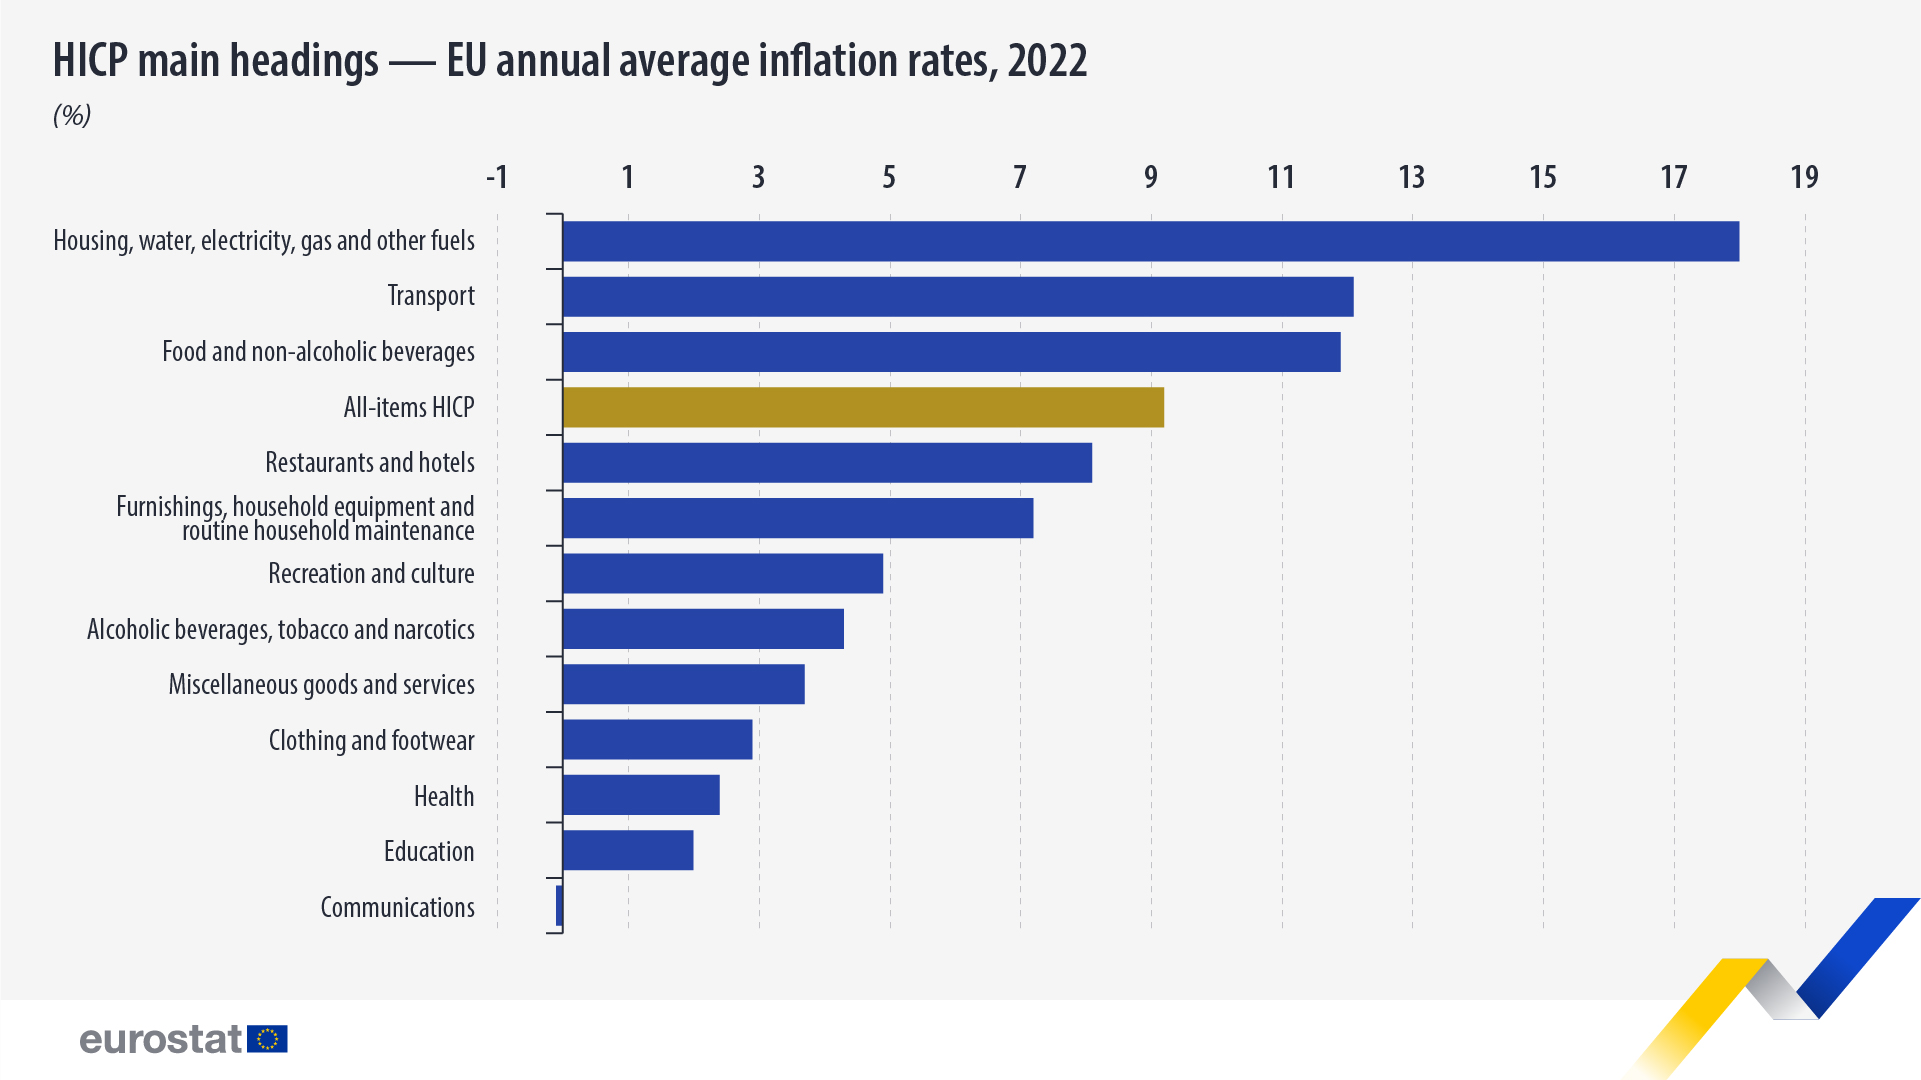 Γράφημα ράβδων: κύριες κατηγορίες του ΕνΔΤΚ - ετήσιοι μέσοι ρυθμοί πληθωρισμού στην ΕΕ, 2022 (σε %)